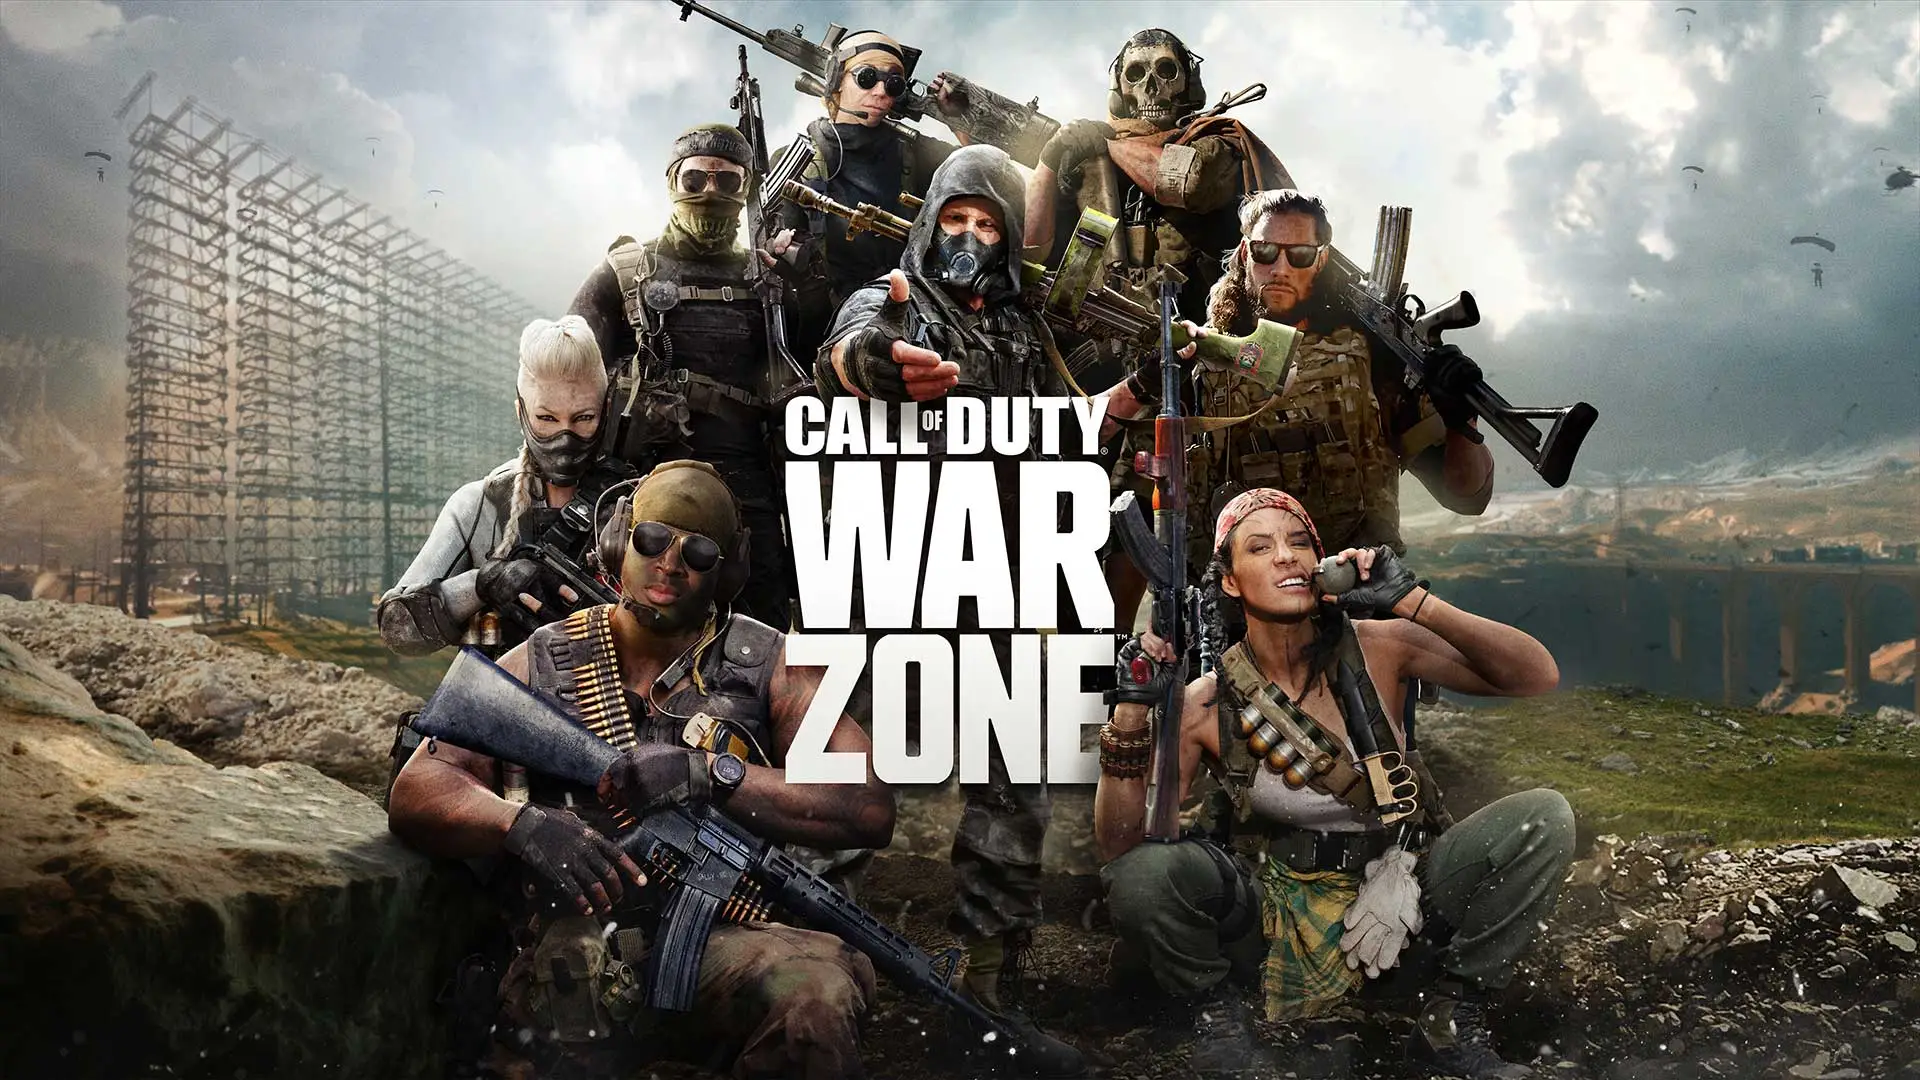 سیستم مورد نیاز کال اف دیوتی وار زون (Call of Duty Warzone)